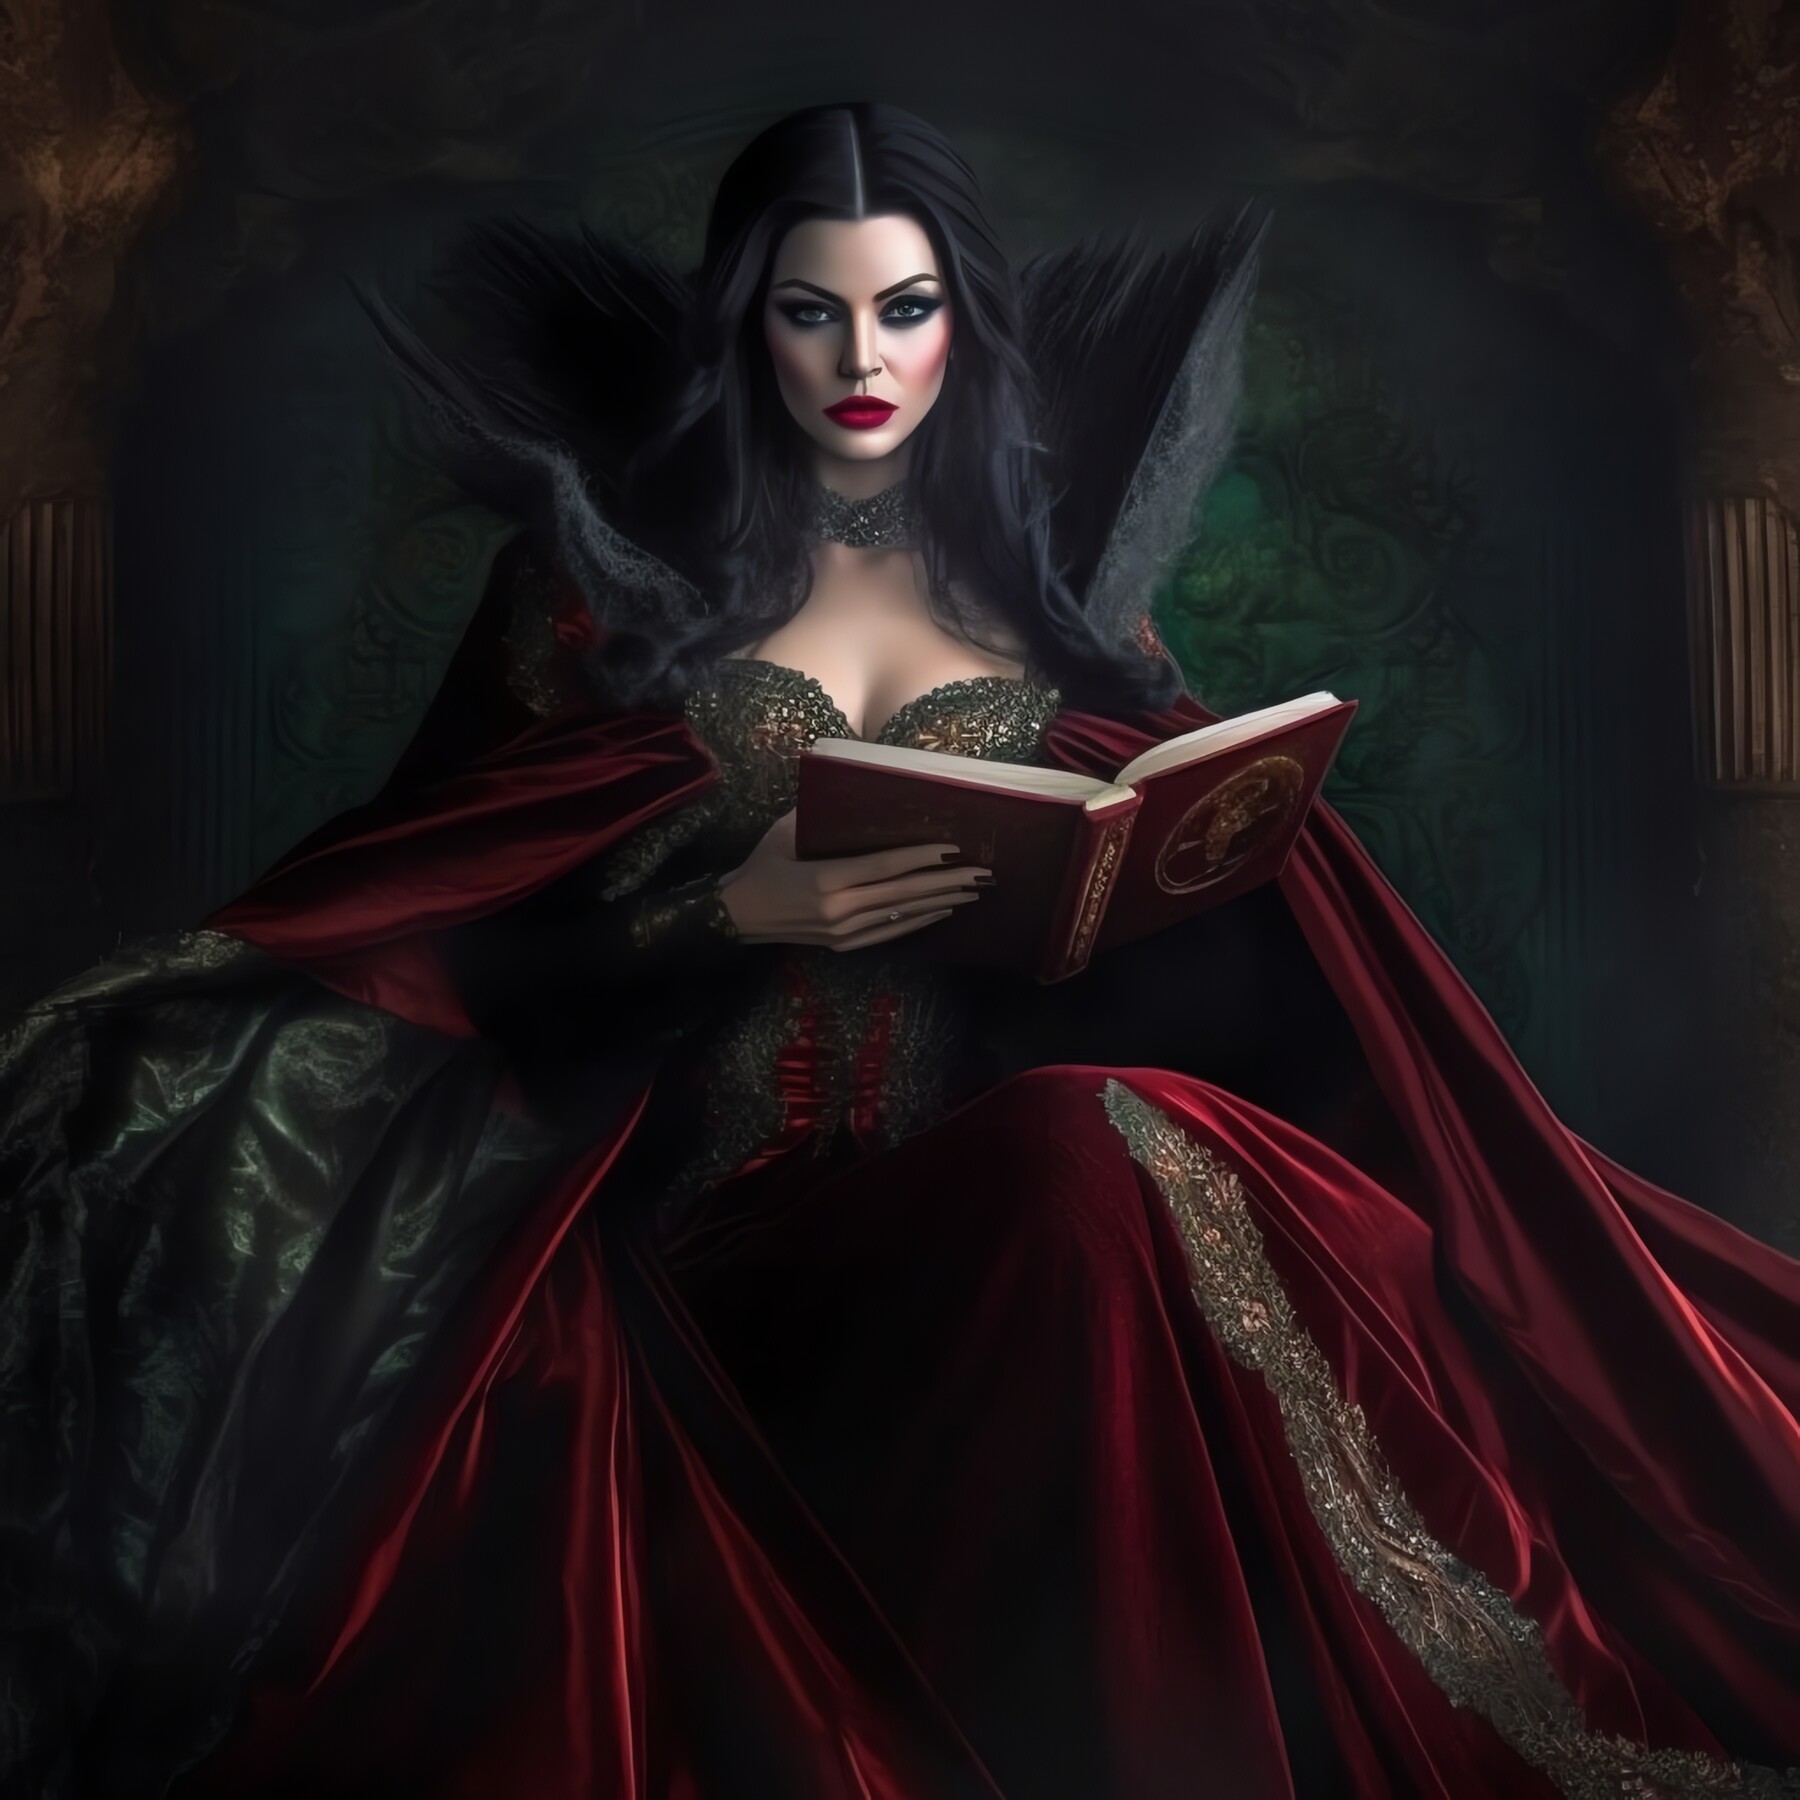 ArtStation - Vampire Queen - I | Artworks